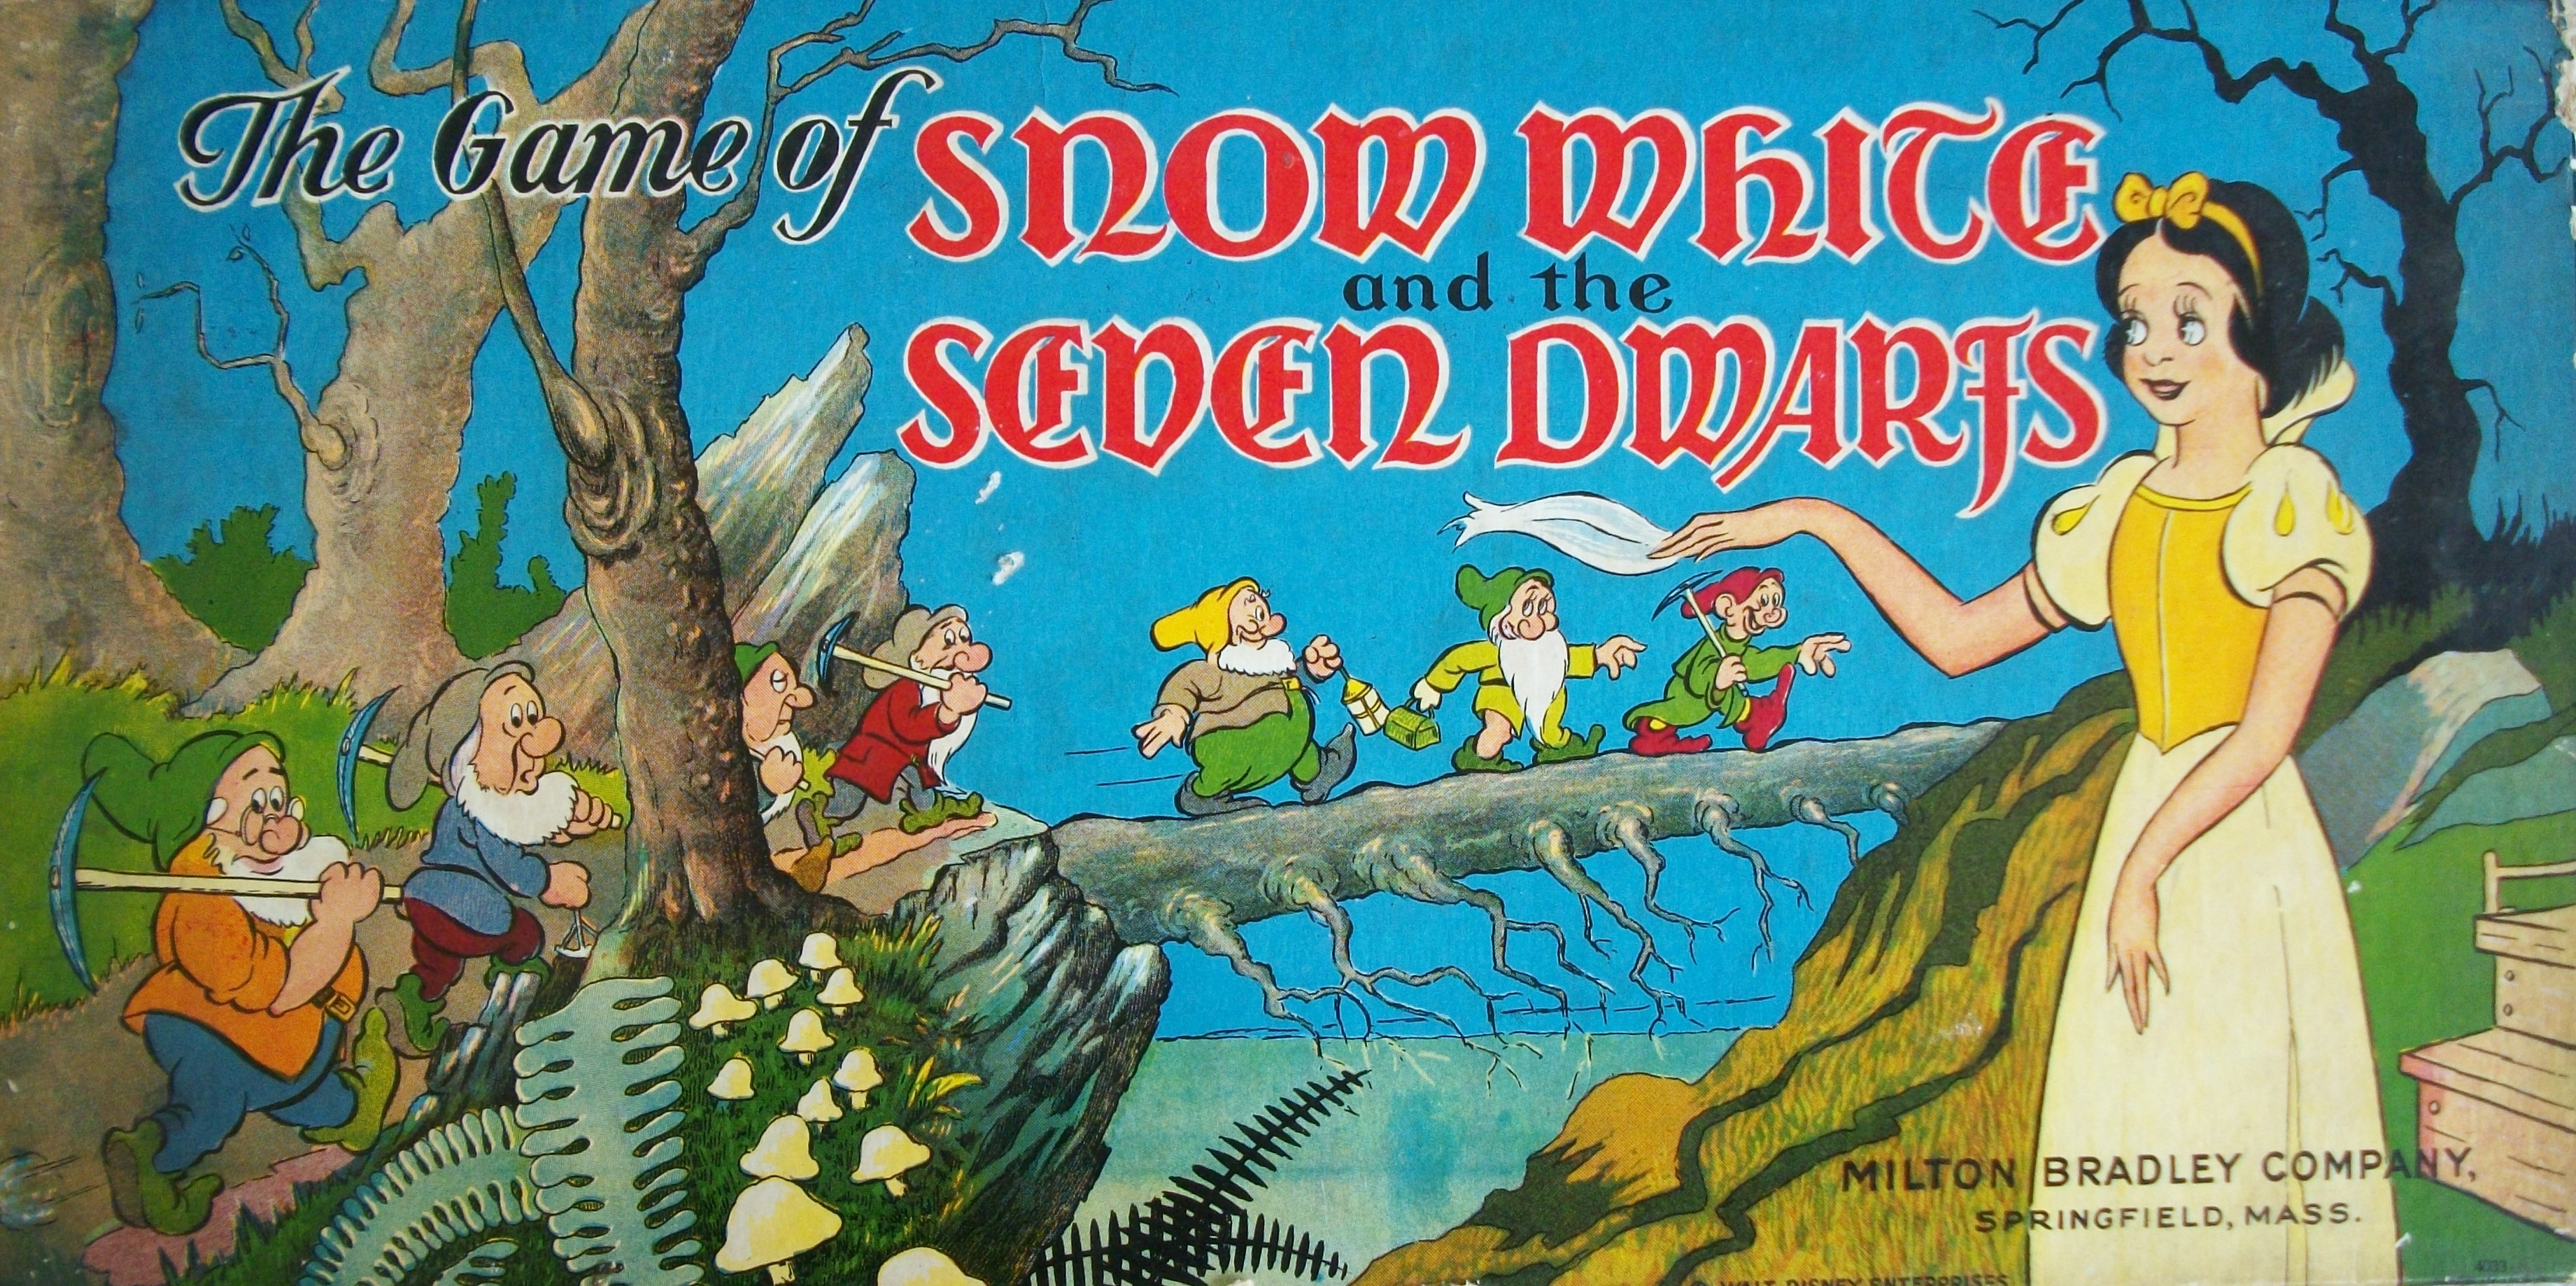 Vintage 1937 Milton Bradley Game of Snow White and the Seven Dwarfs